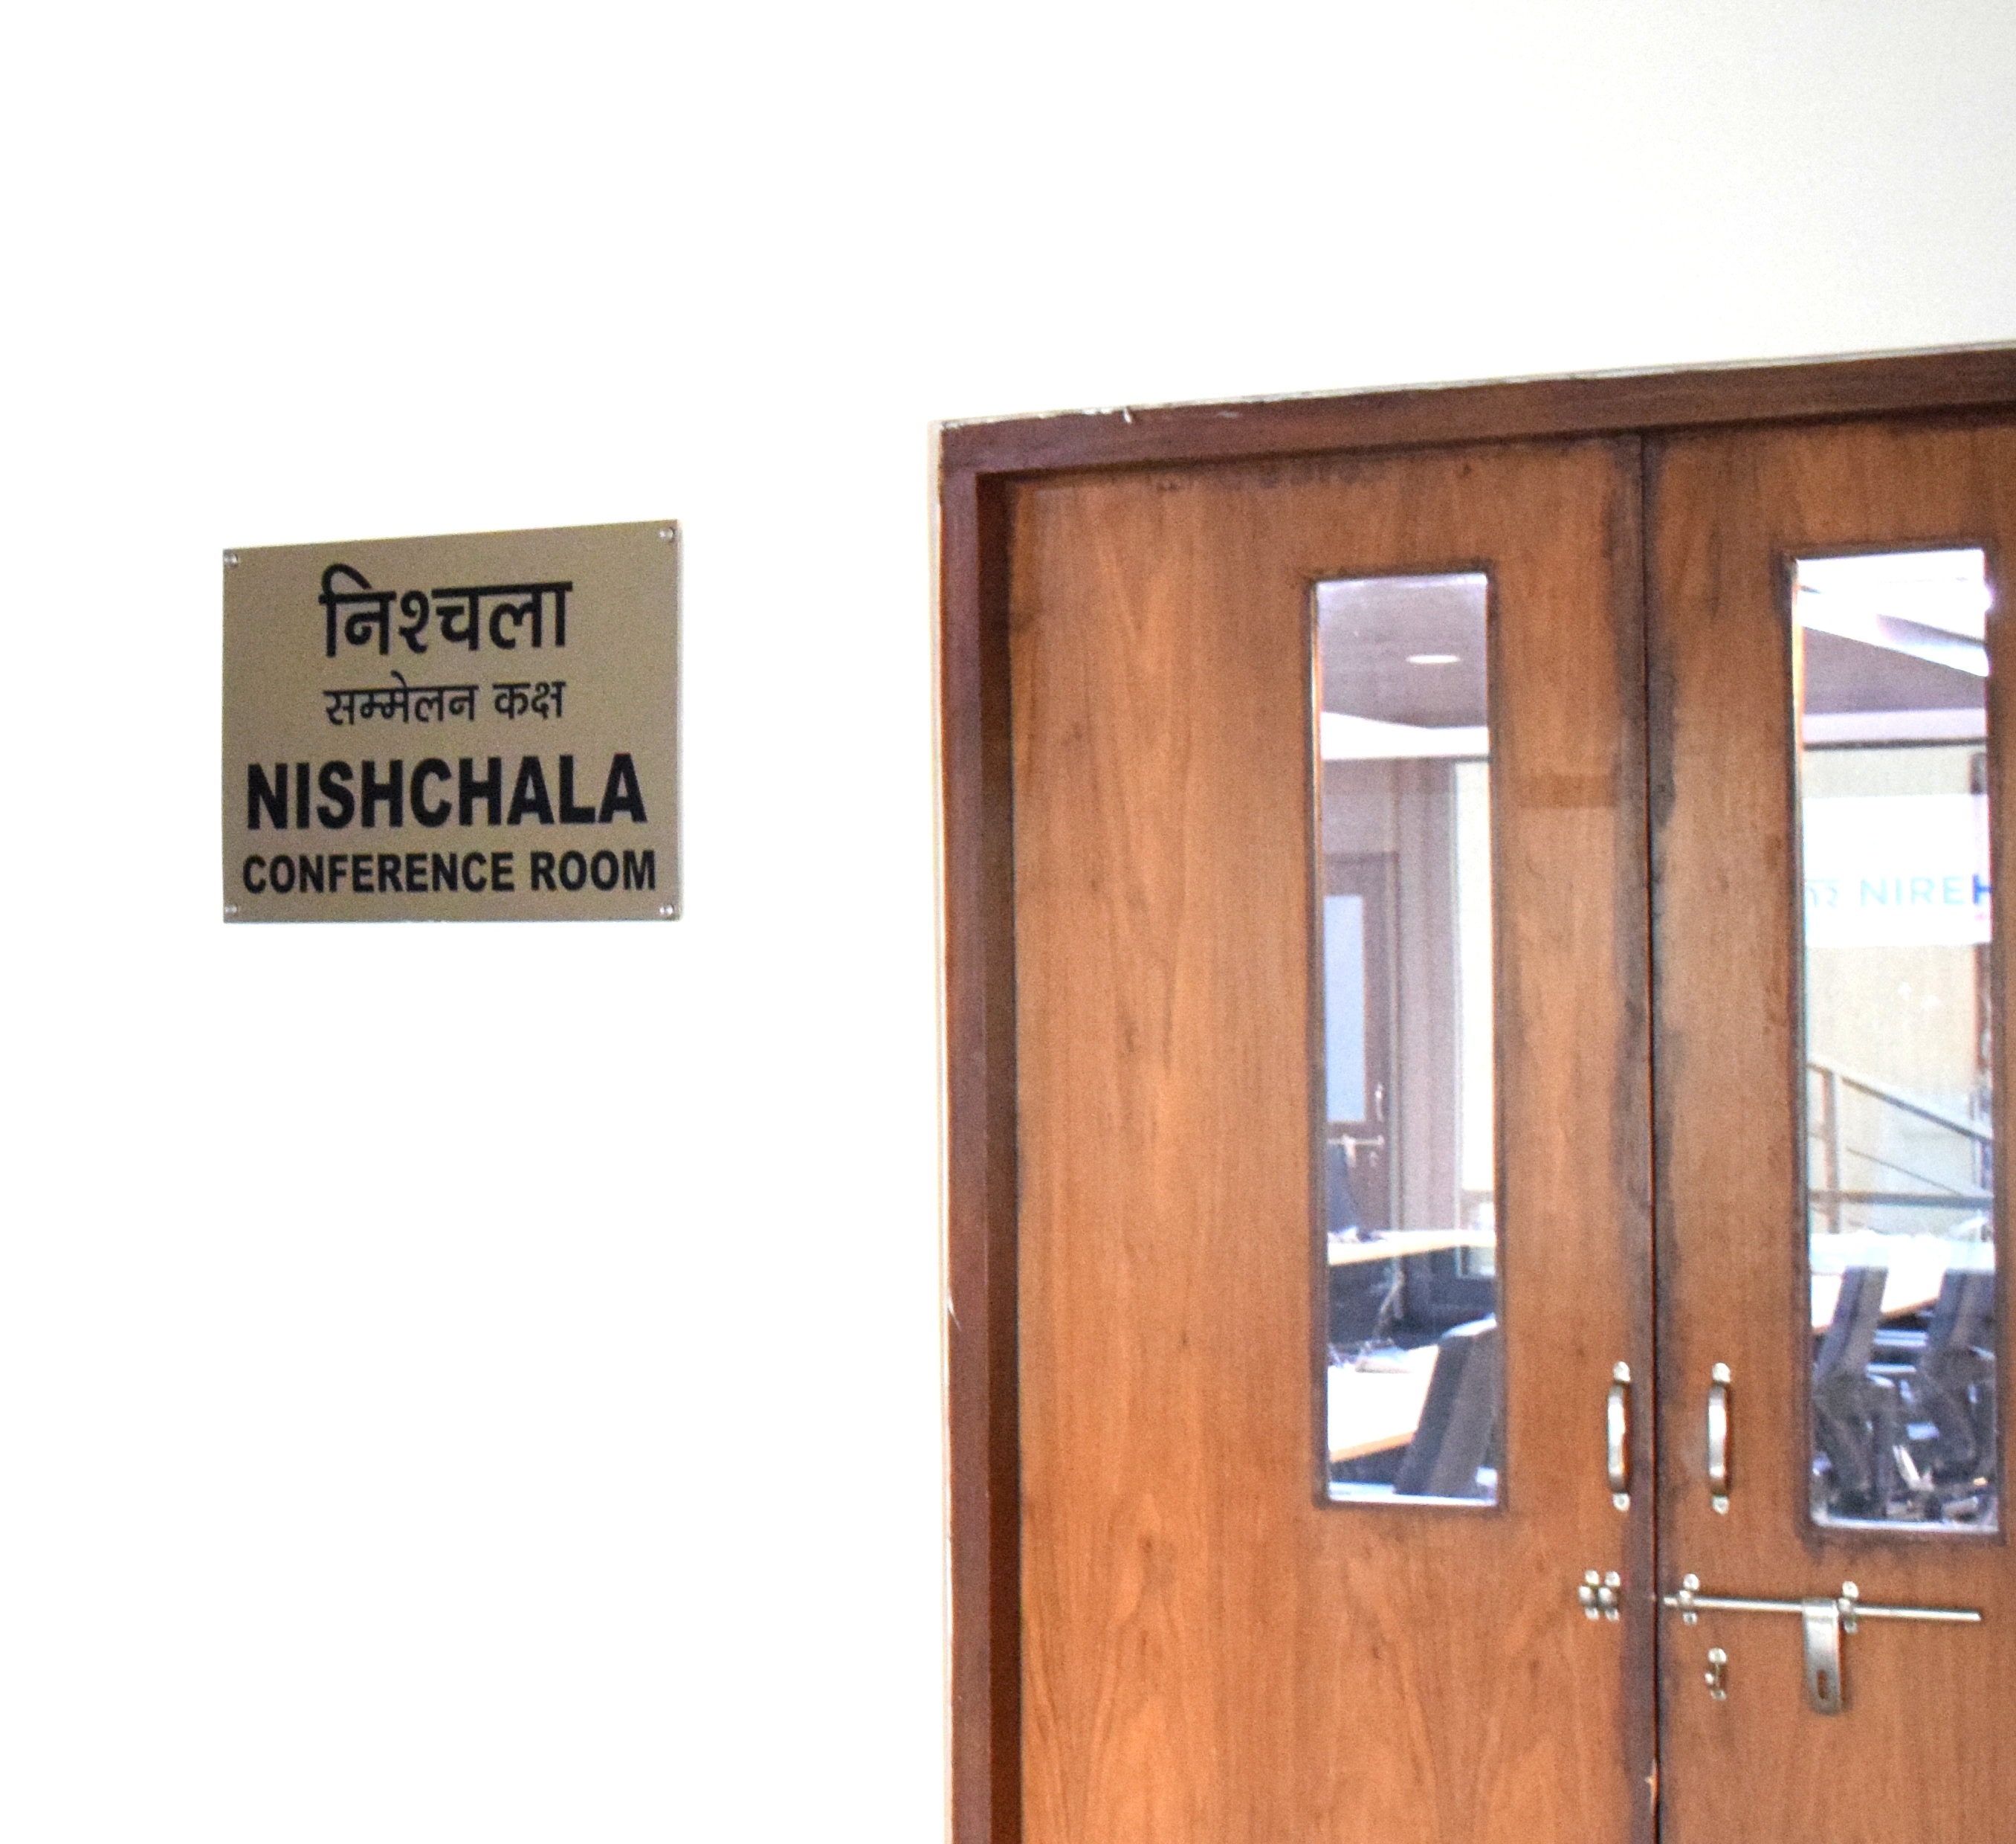 Lab of NIREH, Bhopal